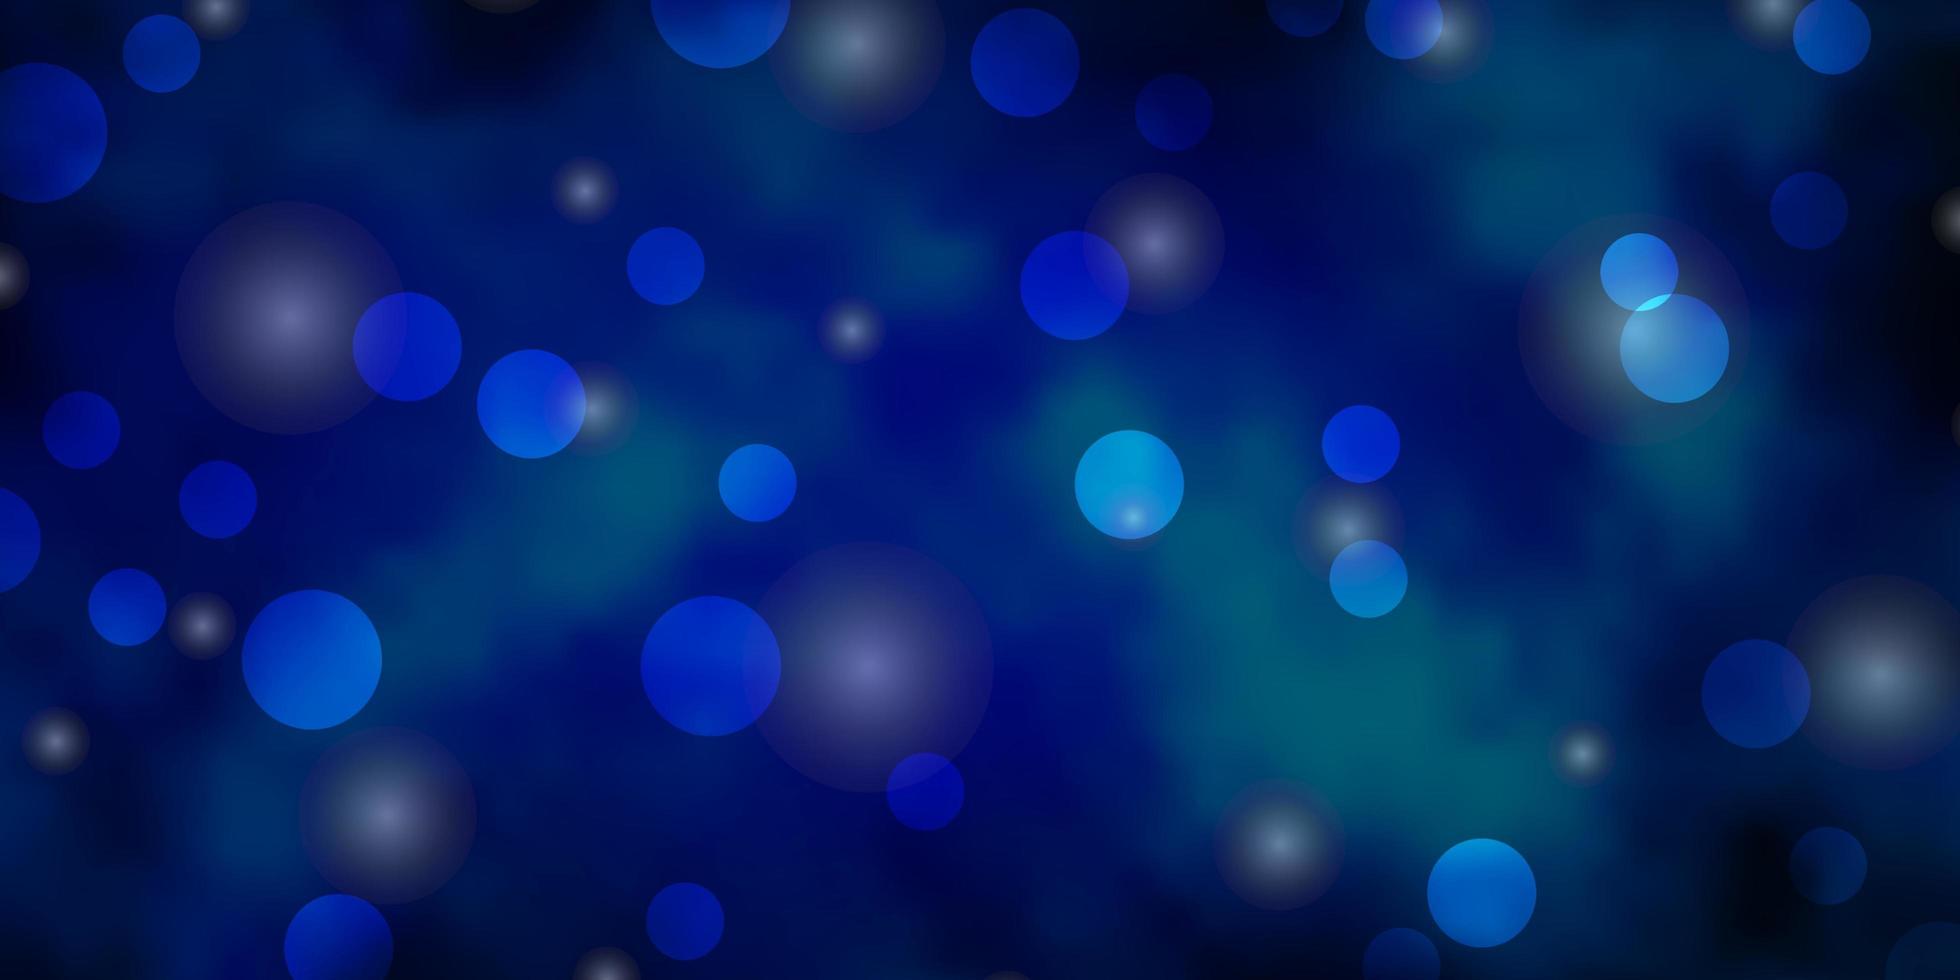 fond de vecteur bleu clair avec des étoiles de cercles